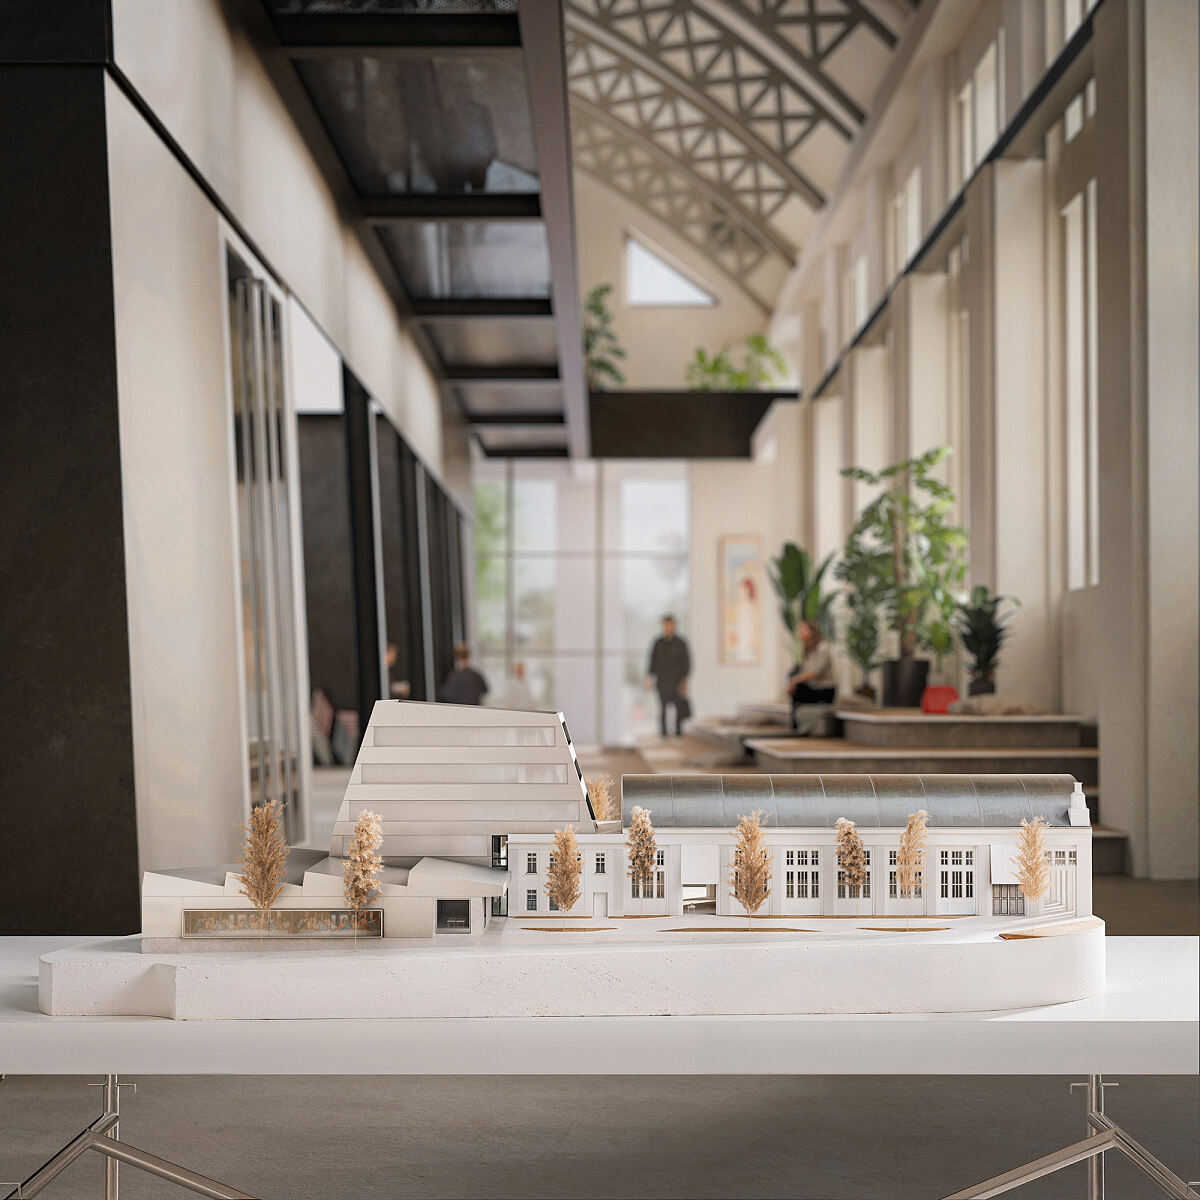 Architekturmodell in der Ballonhalle - Siegerprojekt des Architekturwettbewerbs zum neuen Standort der Akademie der bildenden Künste Wien